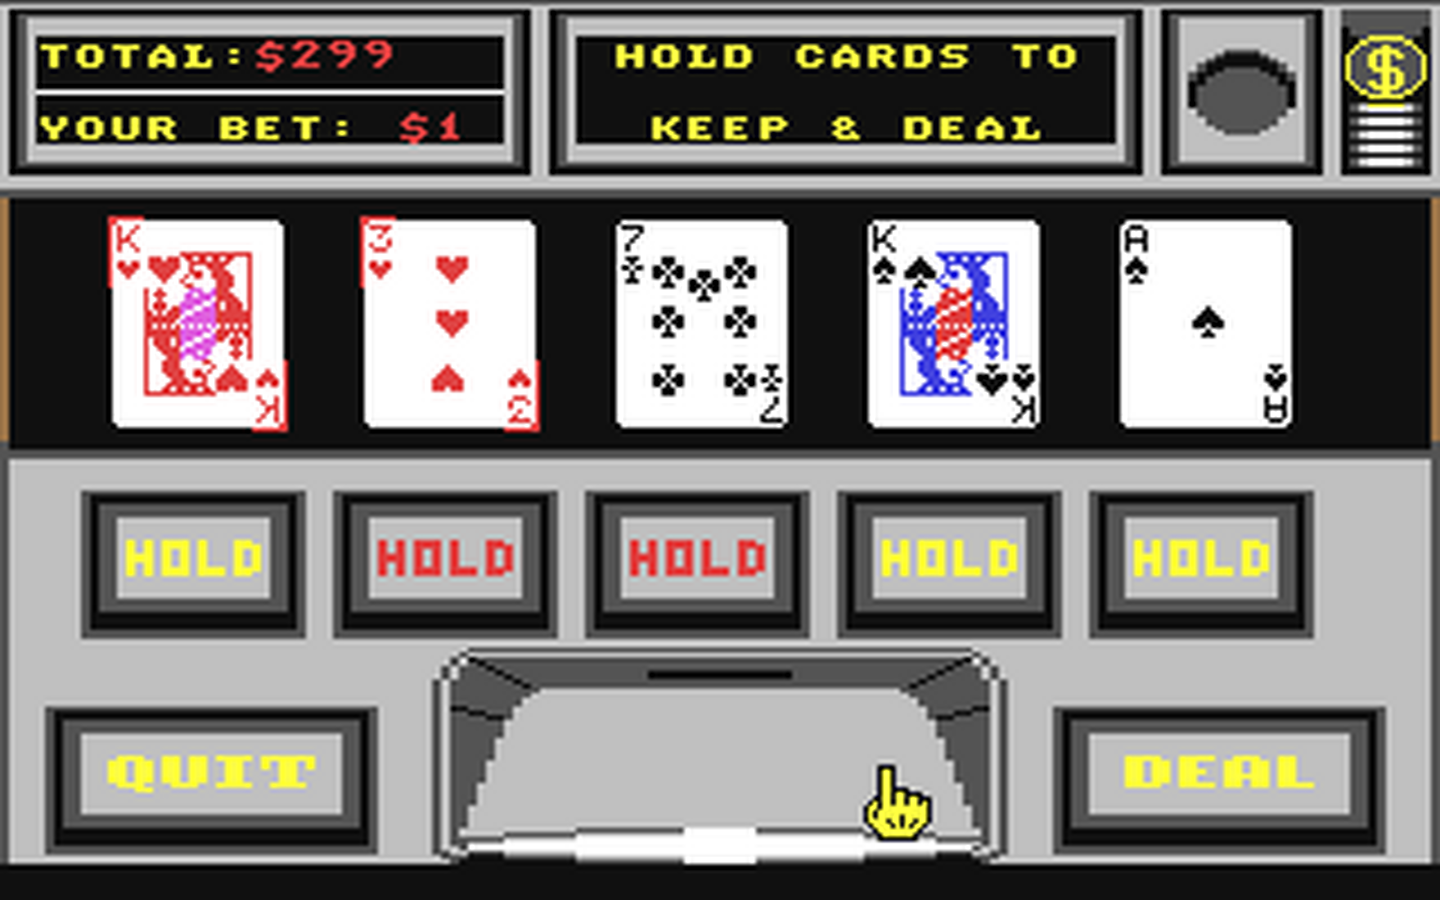 C64 GameBase Vegas_Gambler California_Dreams 1987